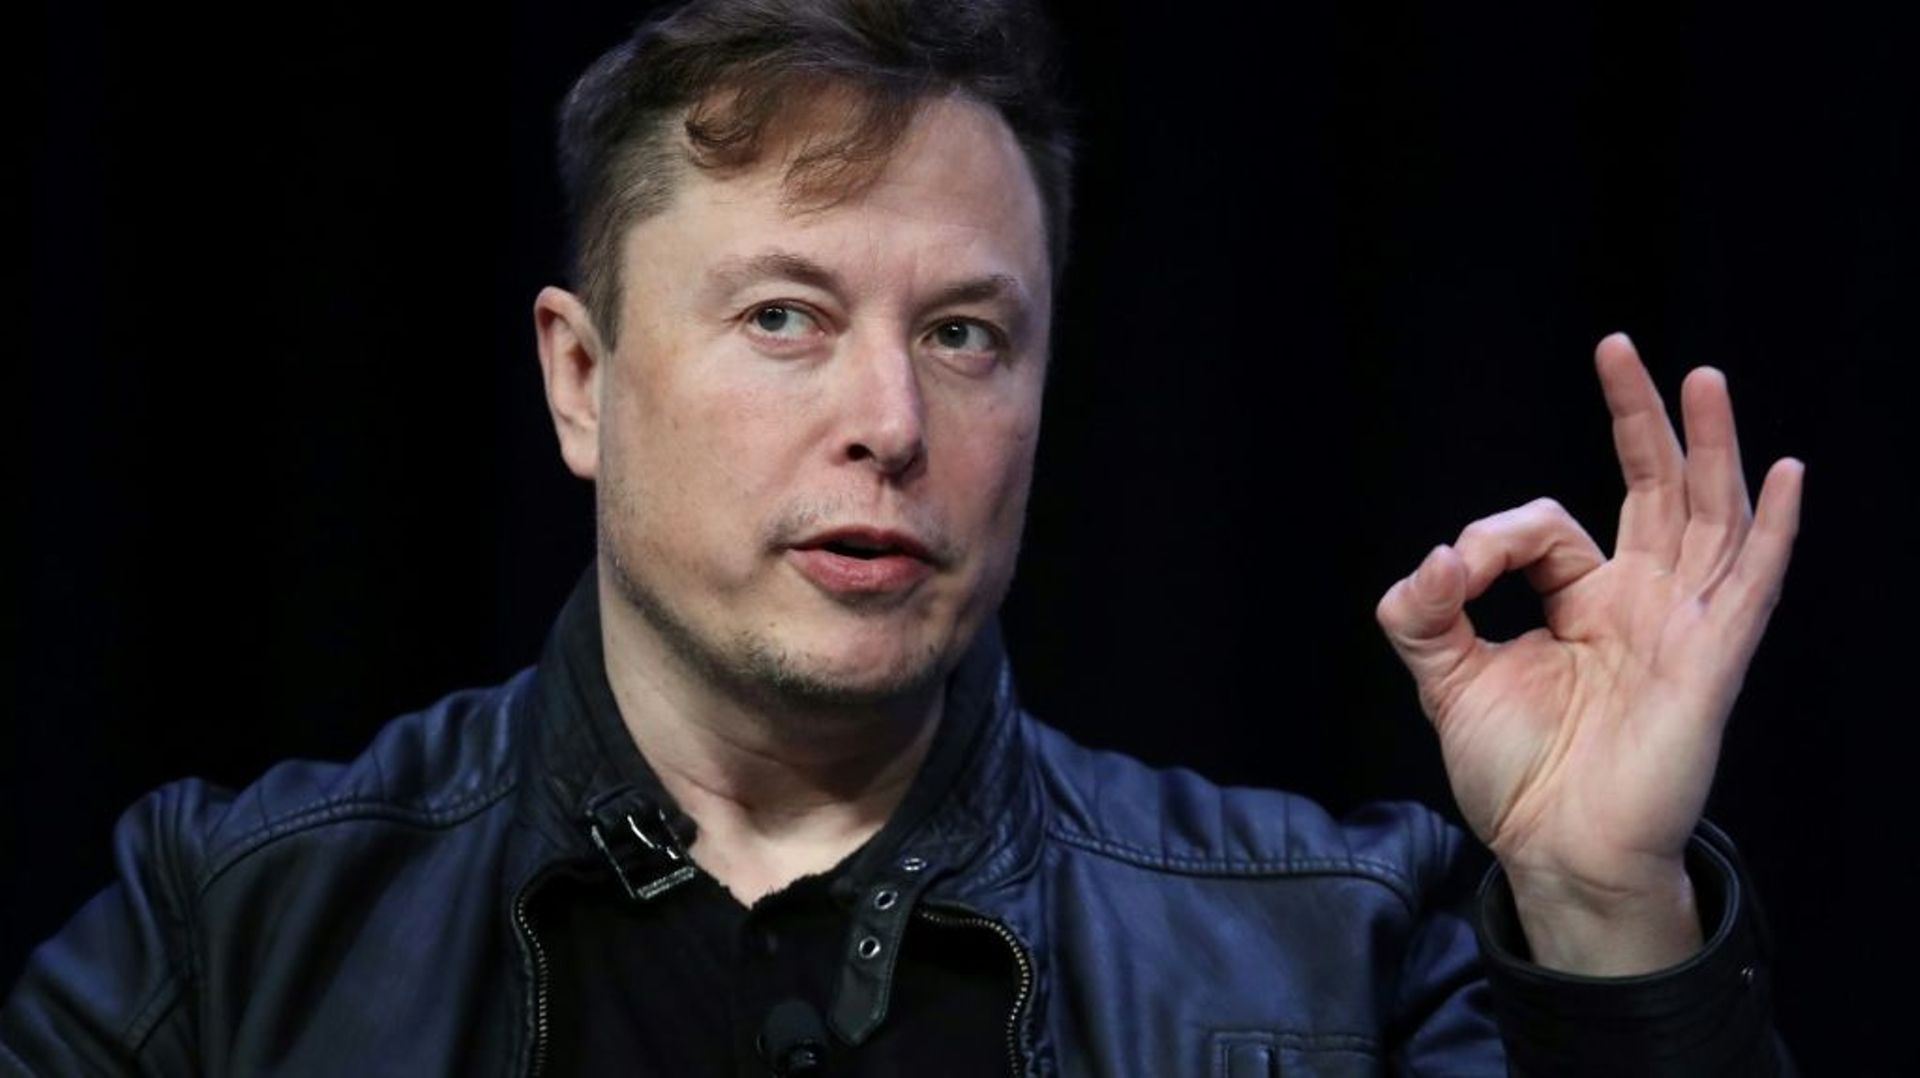 Elon Musk a fondé en mars une nouvelle entreprise spécialisée dans l’intelligence artificielle (IA), baptisée X.AI et basée dans le Nevada, d’après un document officiel consulté par l’AFP.